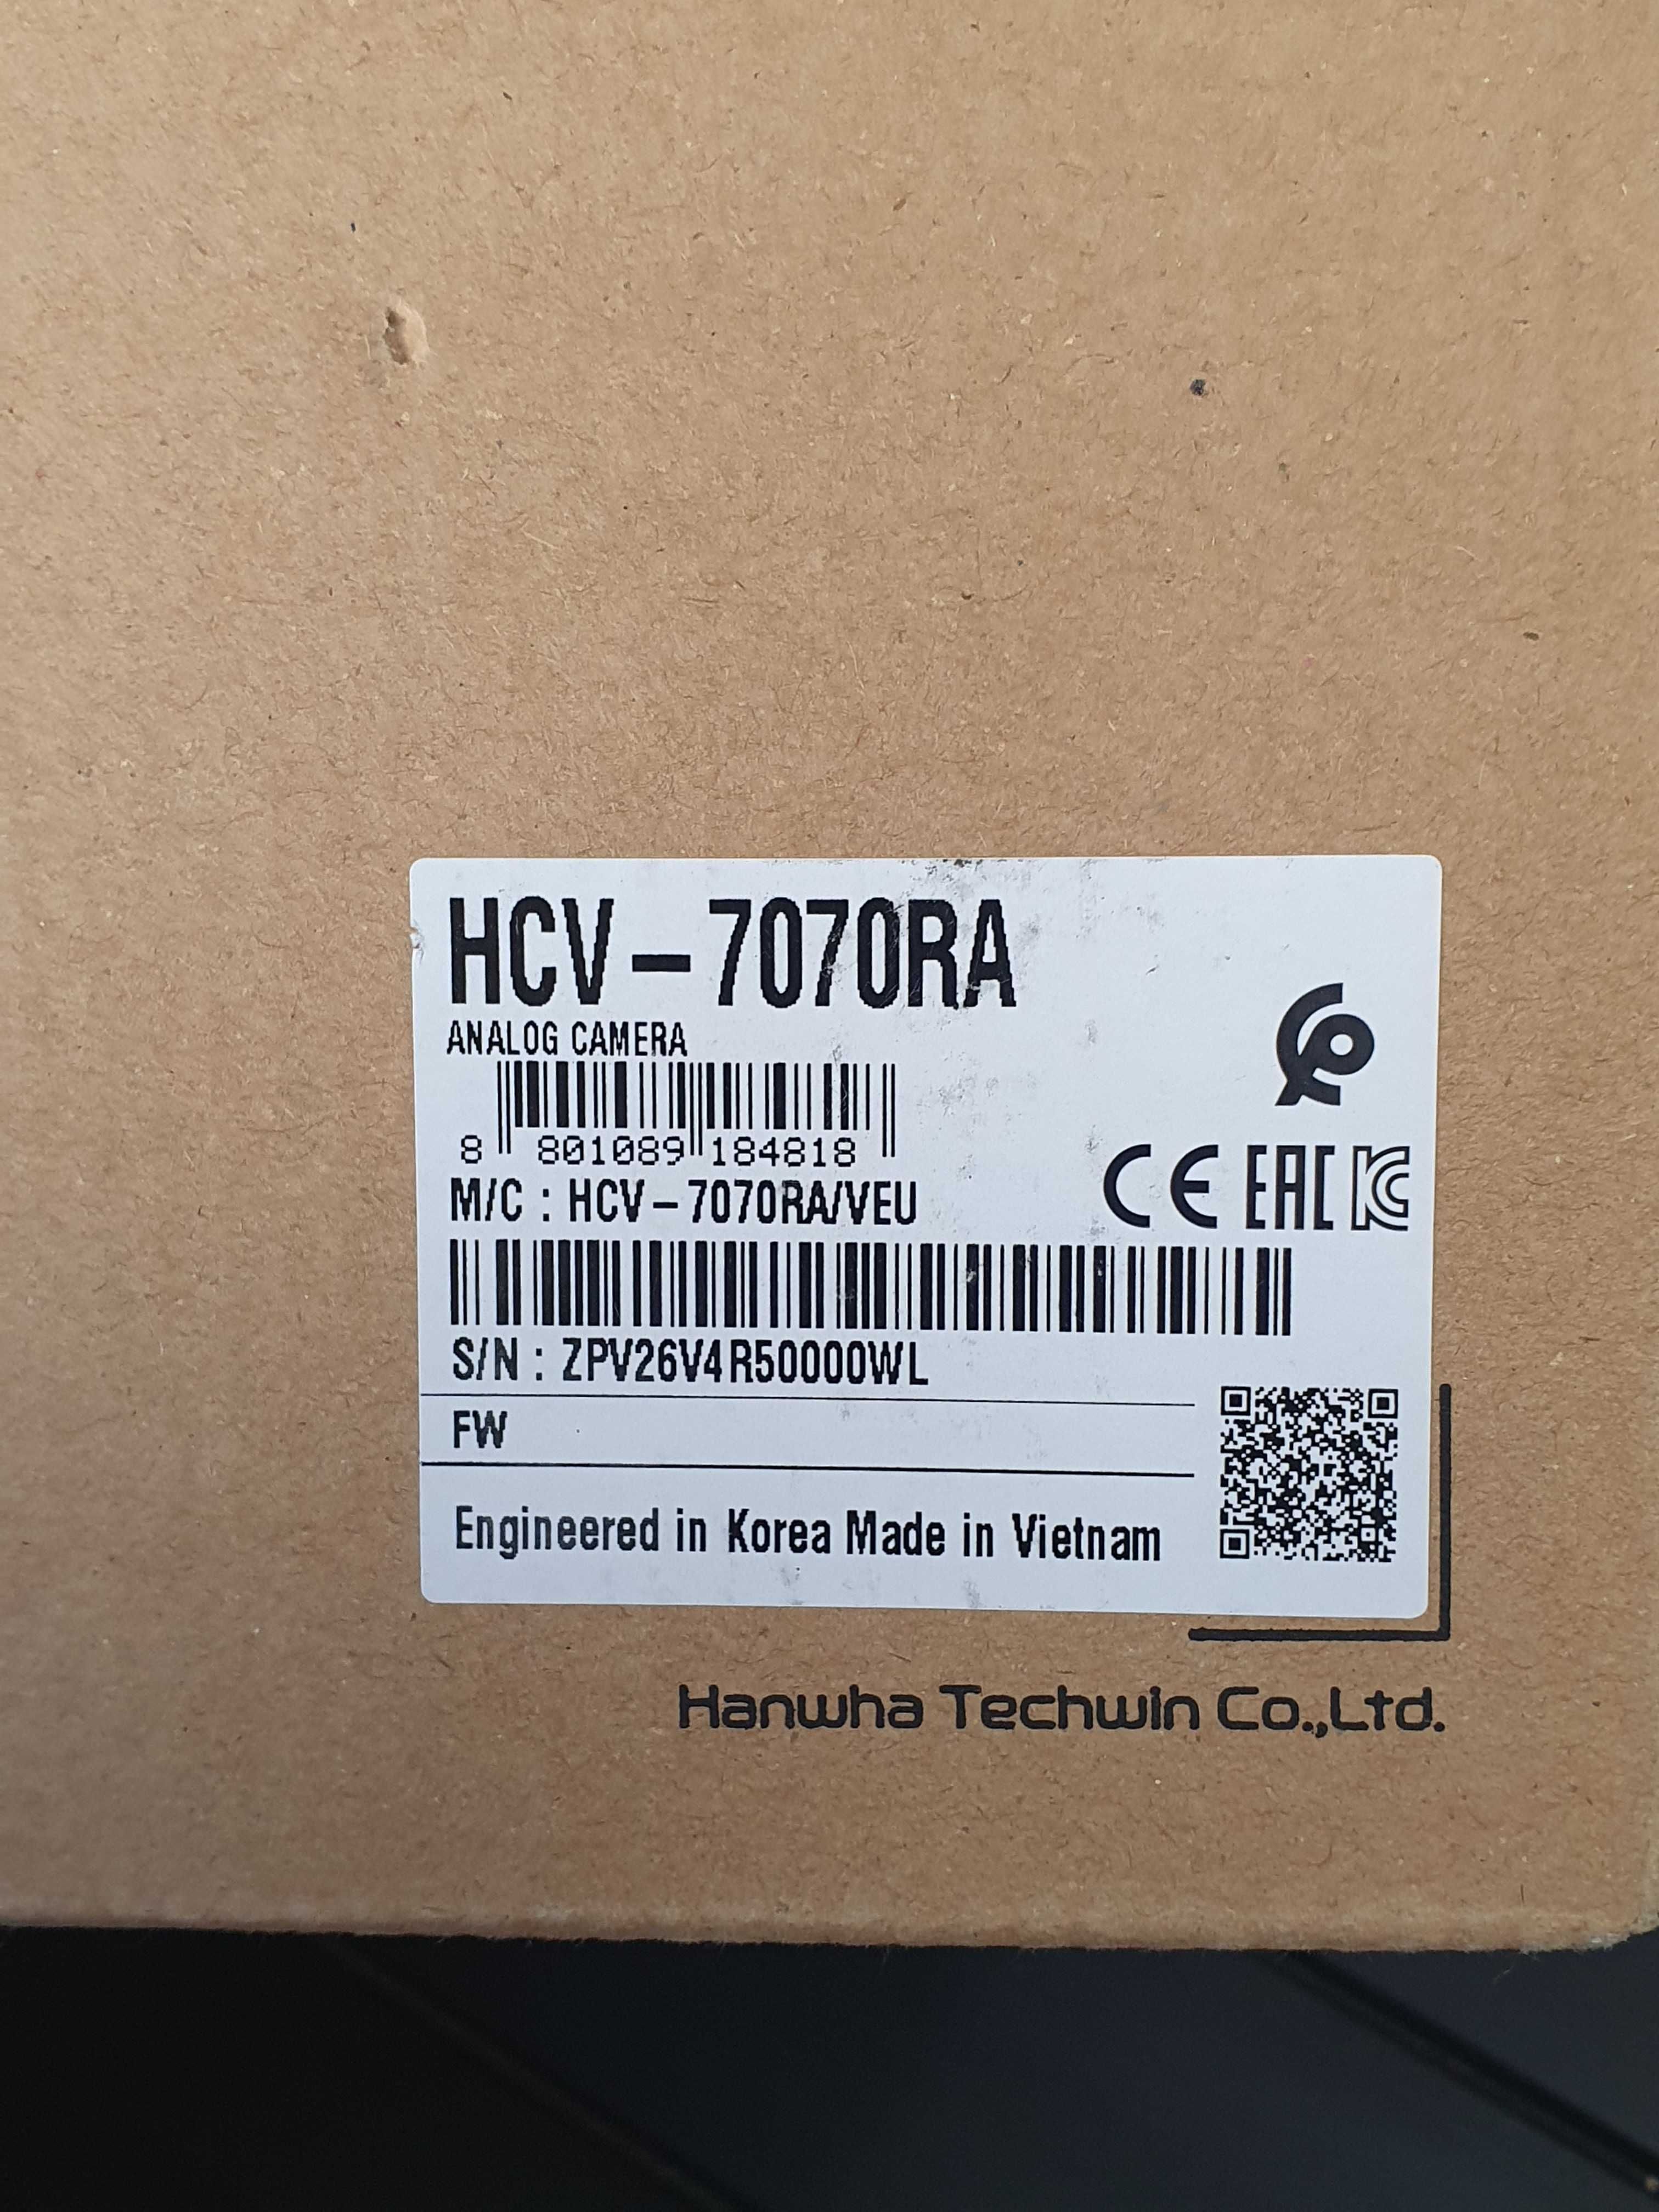 De vanzare doua camere video  noi model:HCV-7070RA